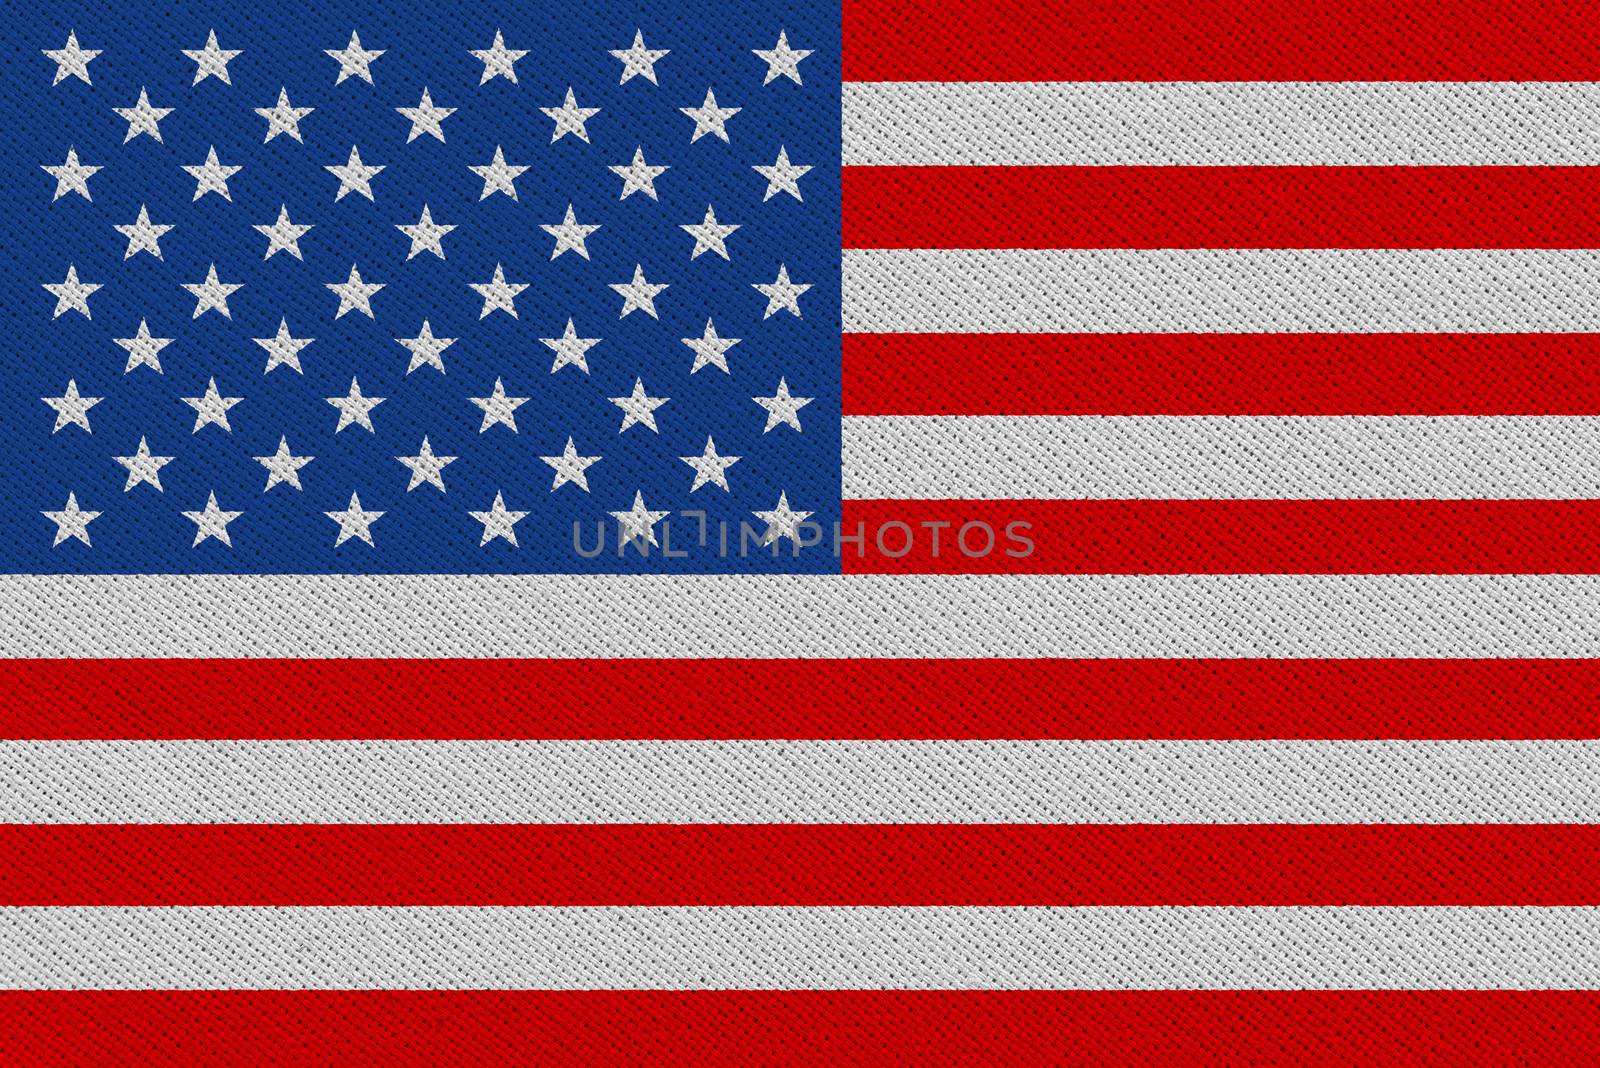 United States of America fabric flag. Patriotic background. National flag of United States of America